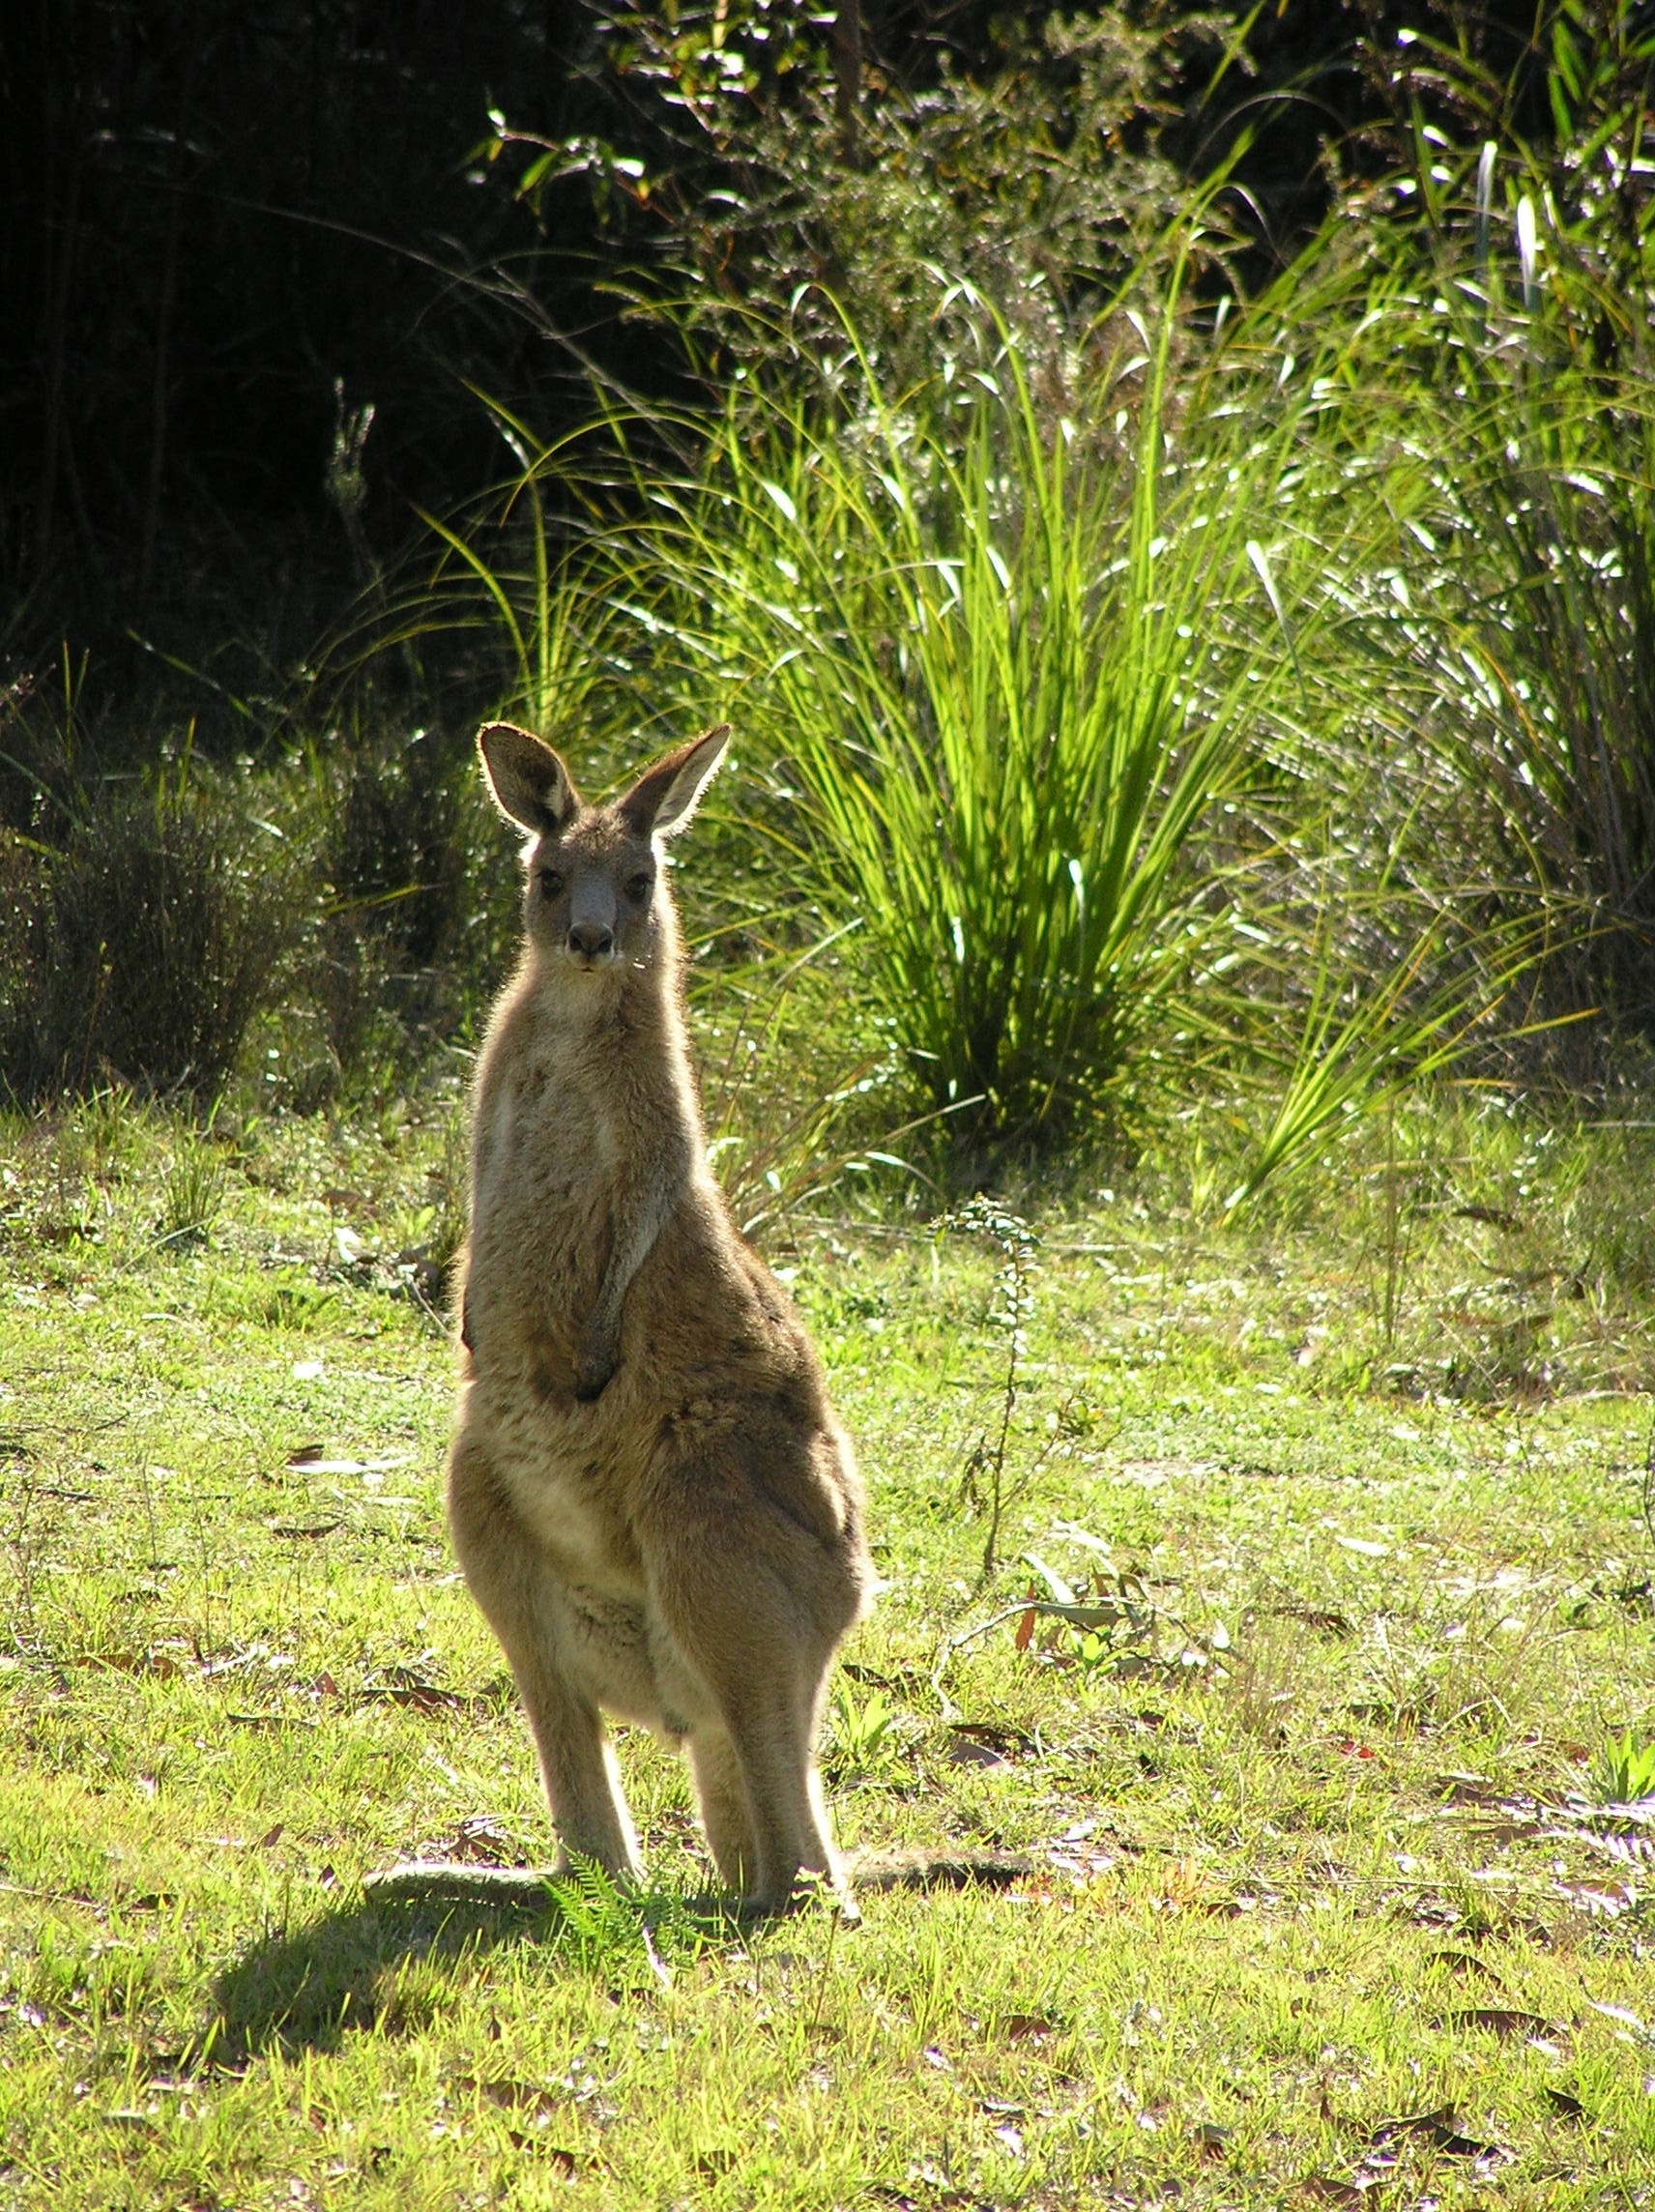 kangaroo on grass